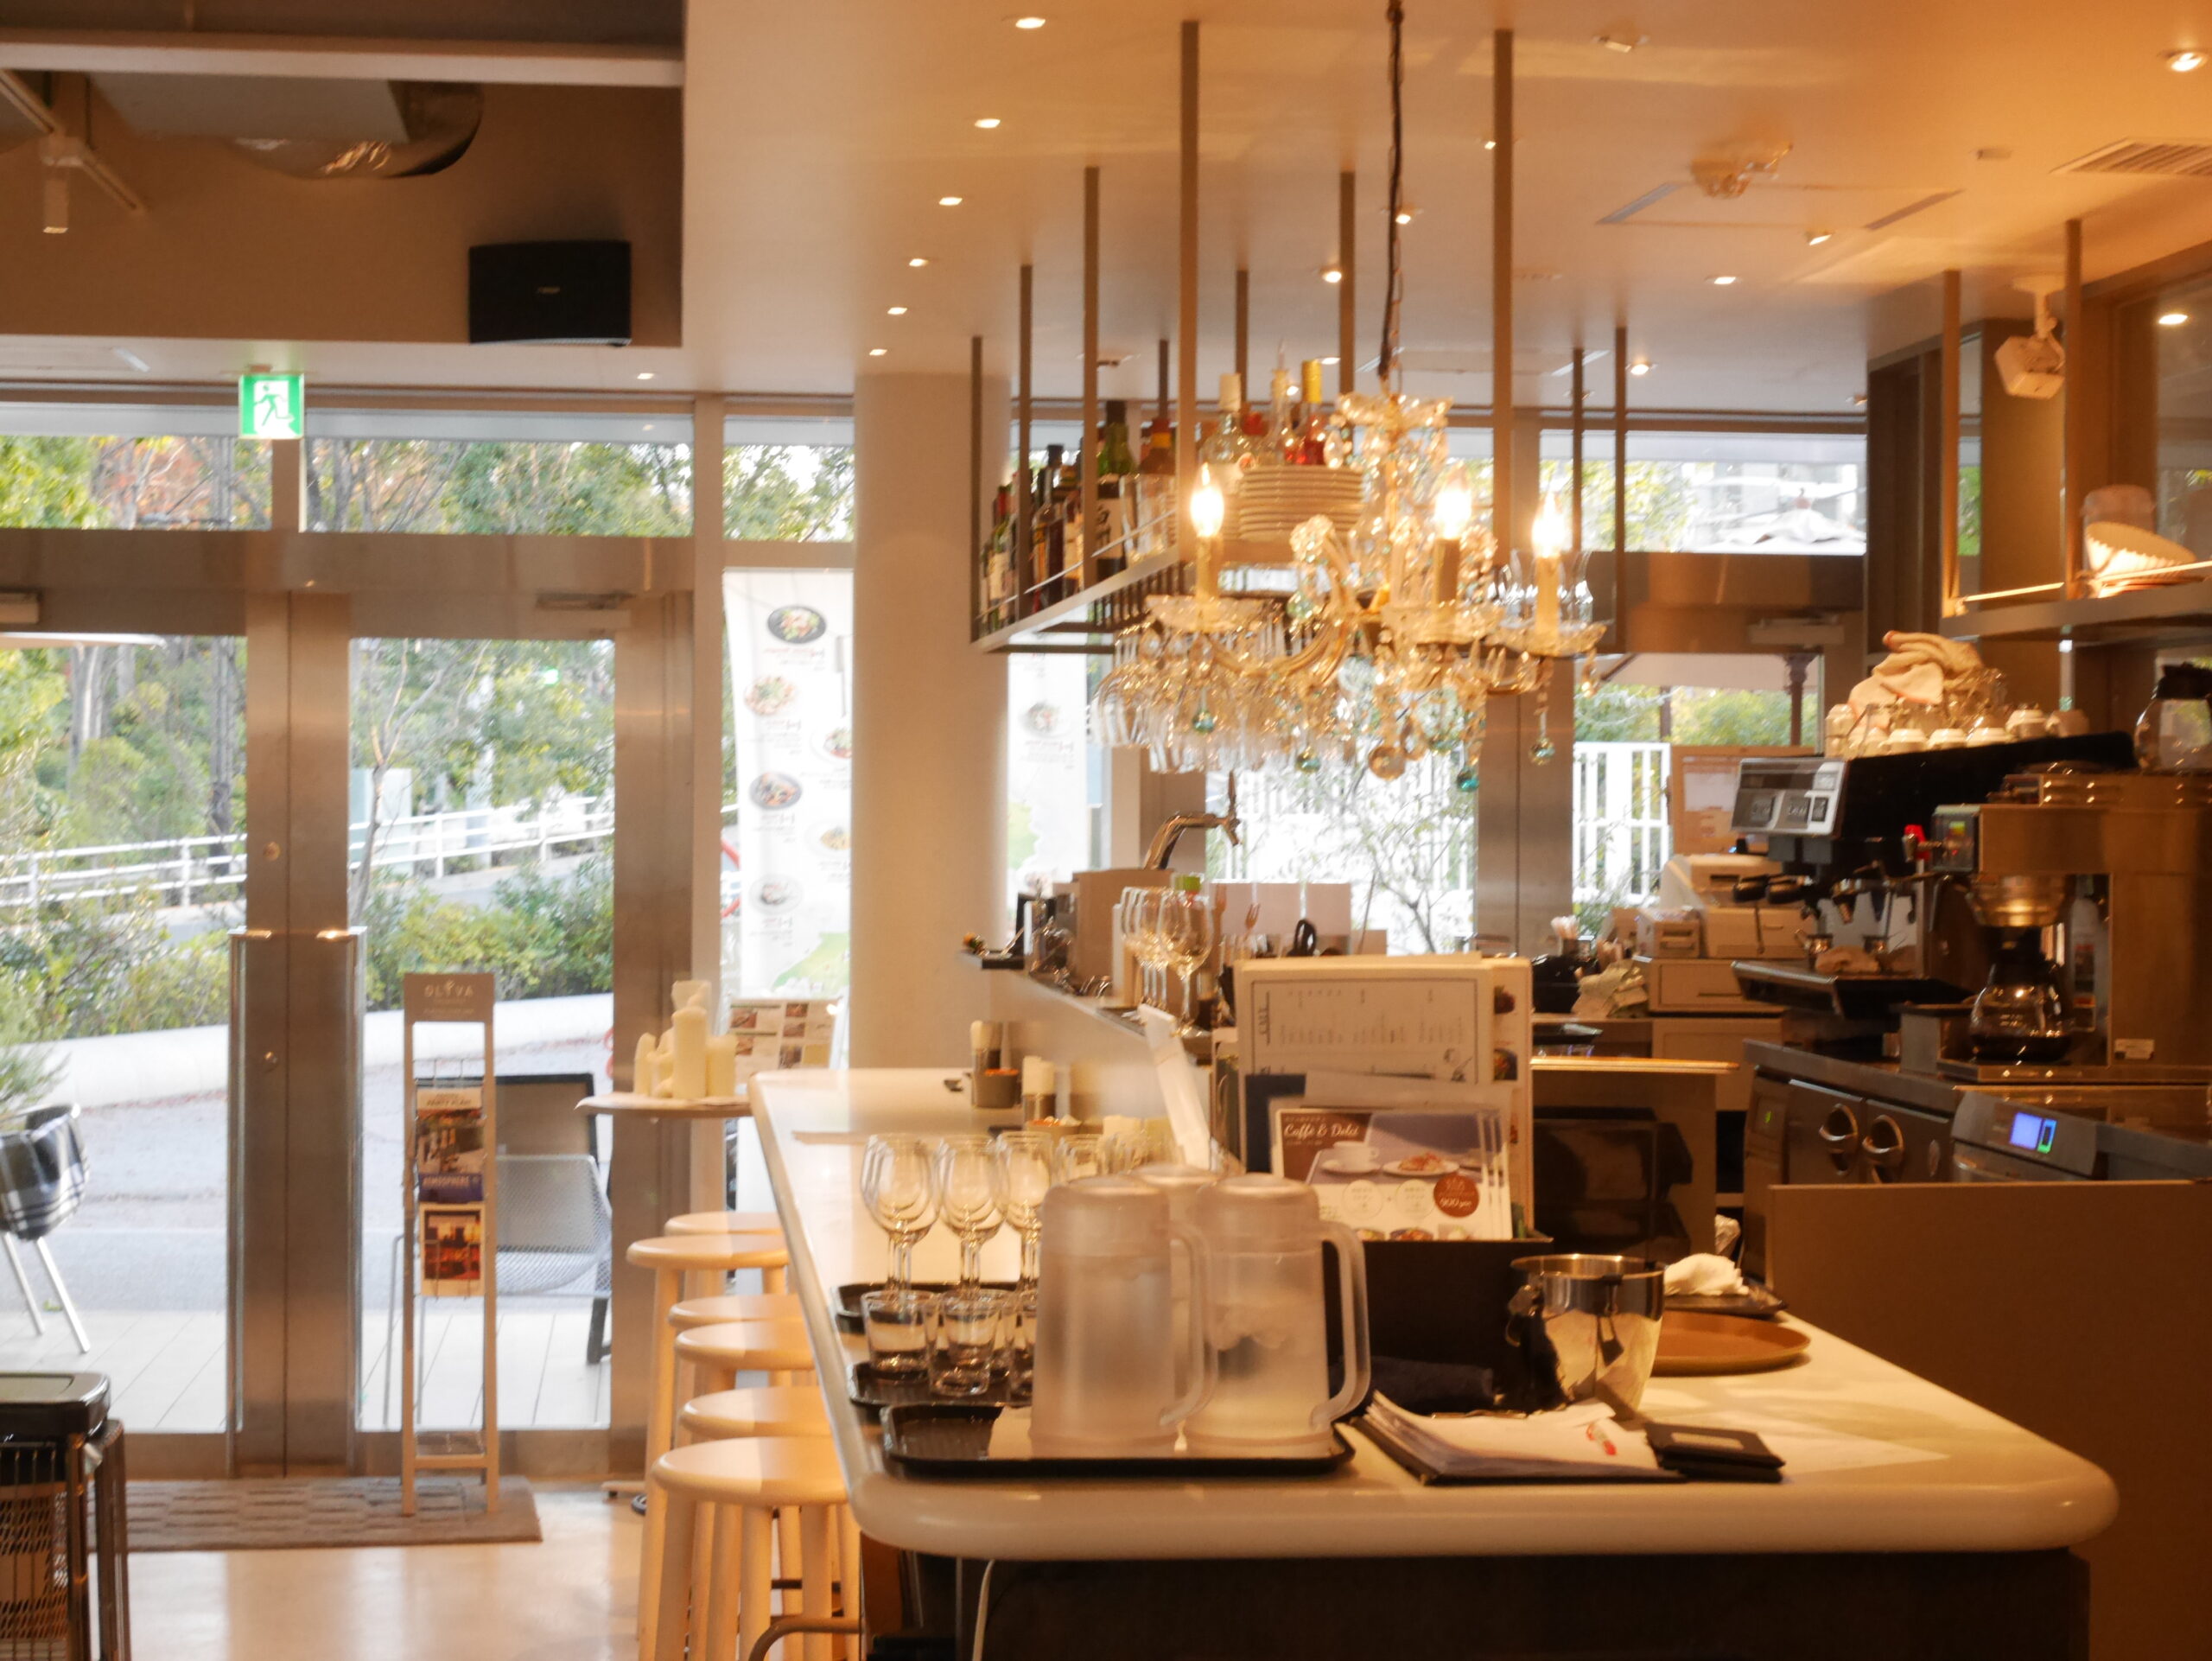 ブルートラベルエンジニア パソコン作業（プログラミング学習環境）におすすめのカフェ|新宿・高田馬場 Cucina Caffe OLIVA（クッチーナ・カフェ・オリーヴァ）